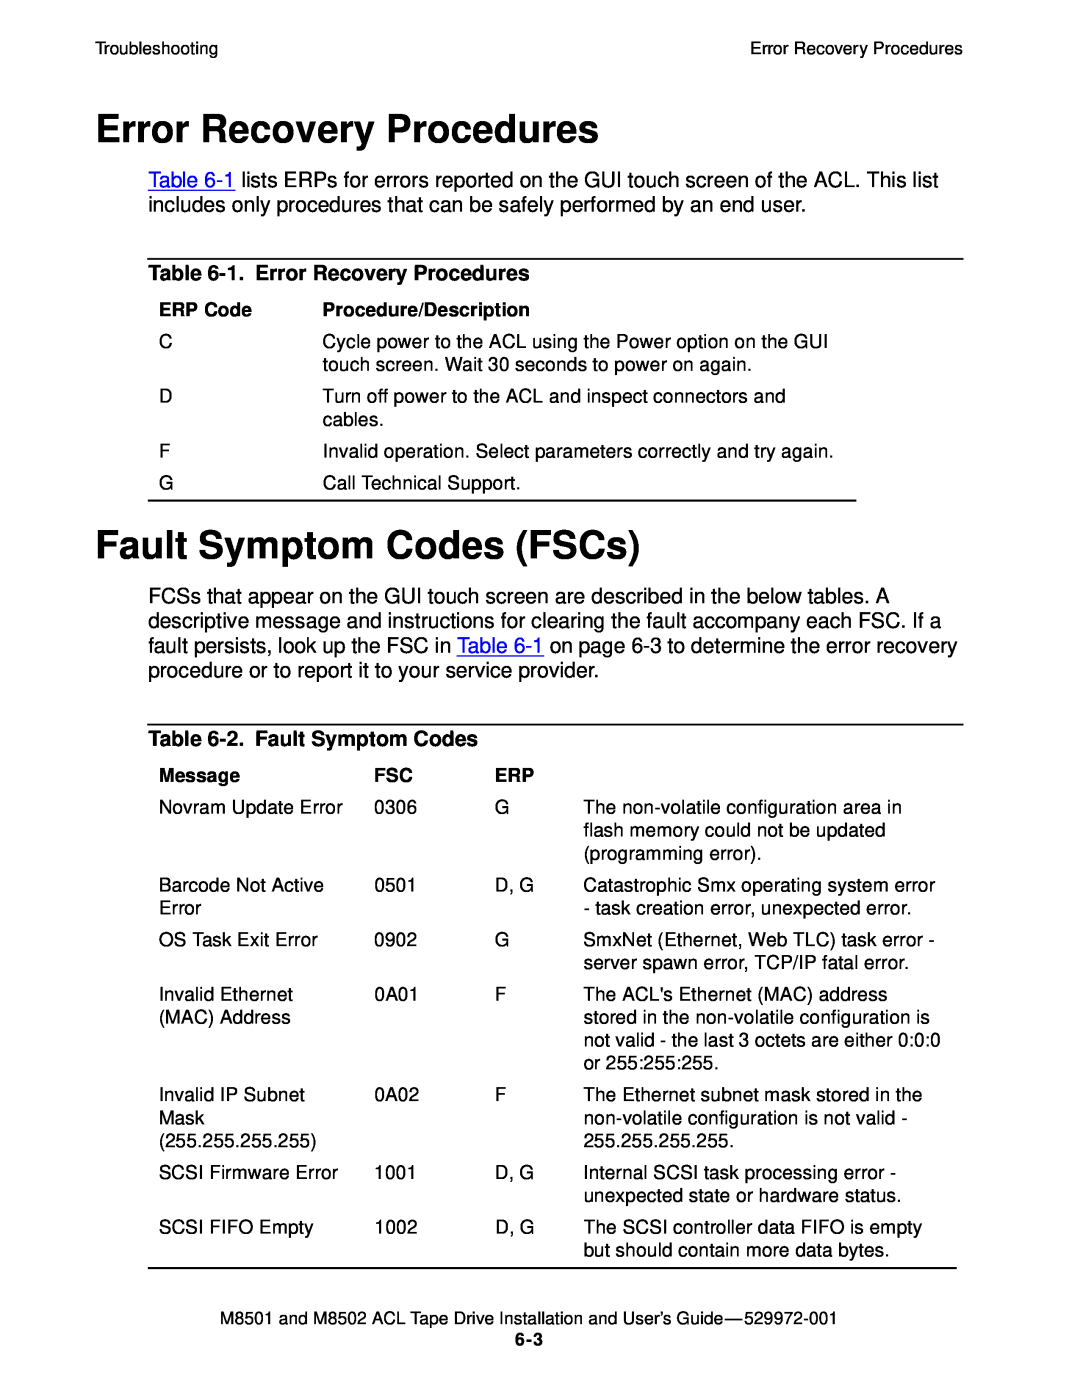 SMC Networks M8501 manual Fault Symptom Codes FSCs, 1. Error Recovery Procedures, 2. Fault Symptom Codes 